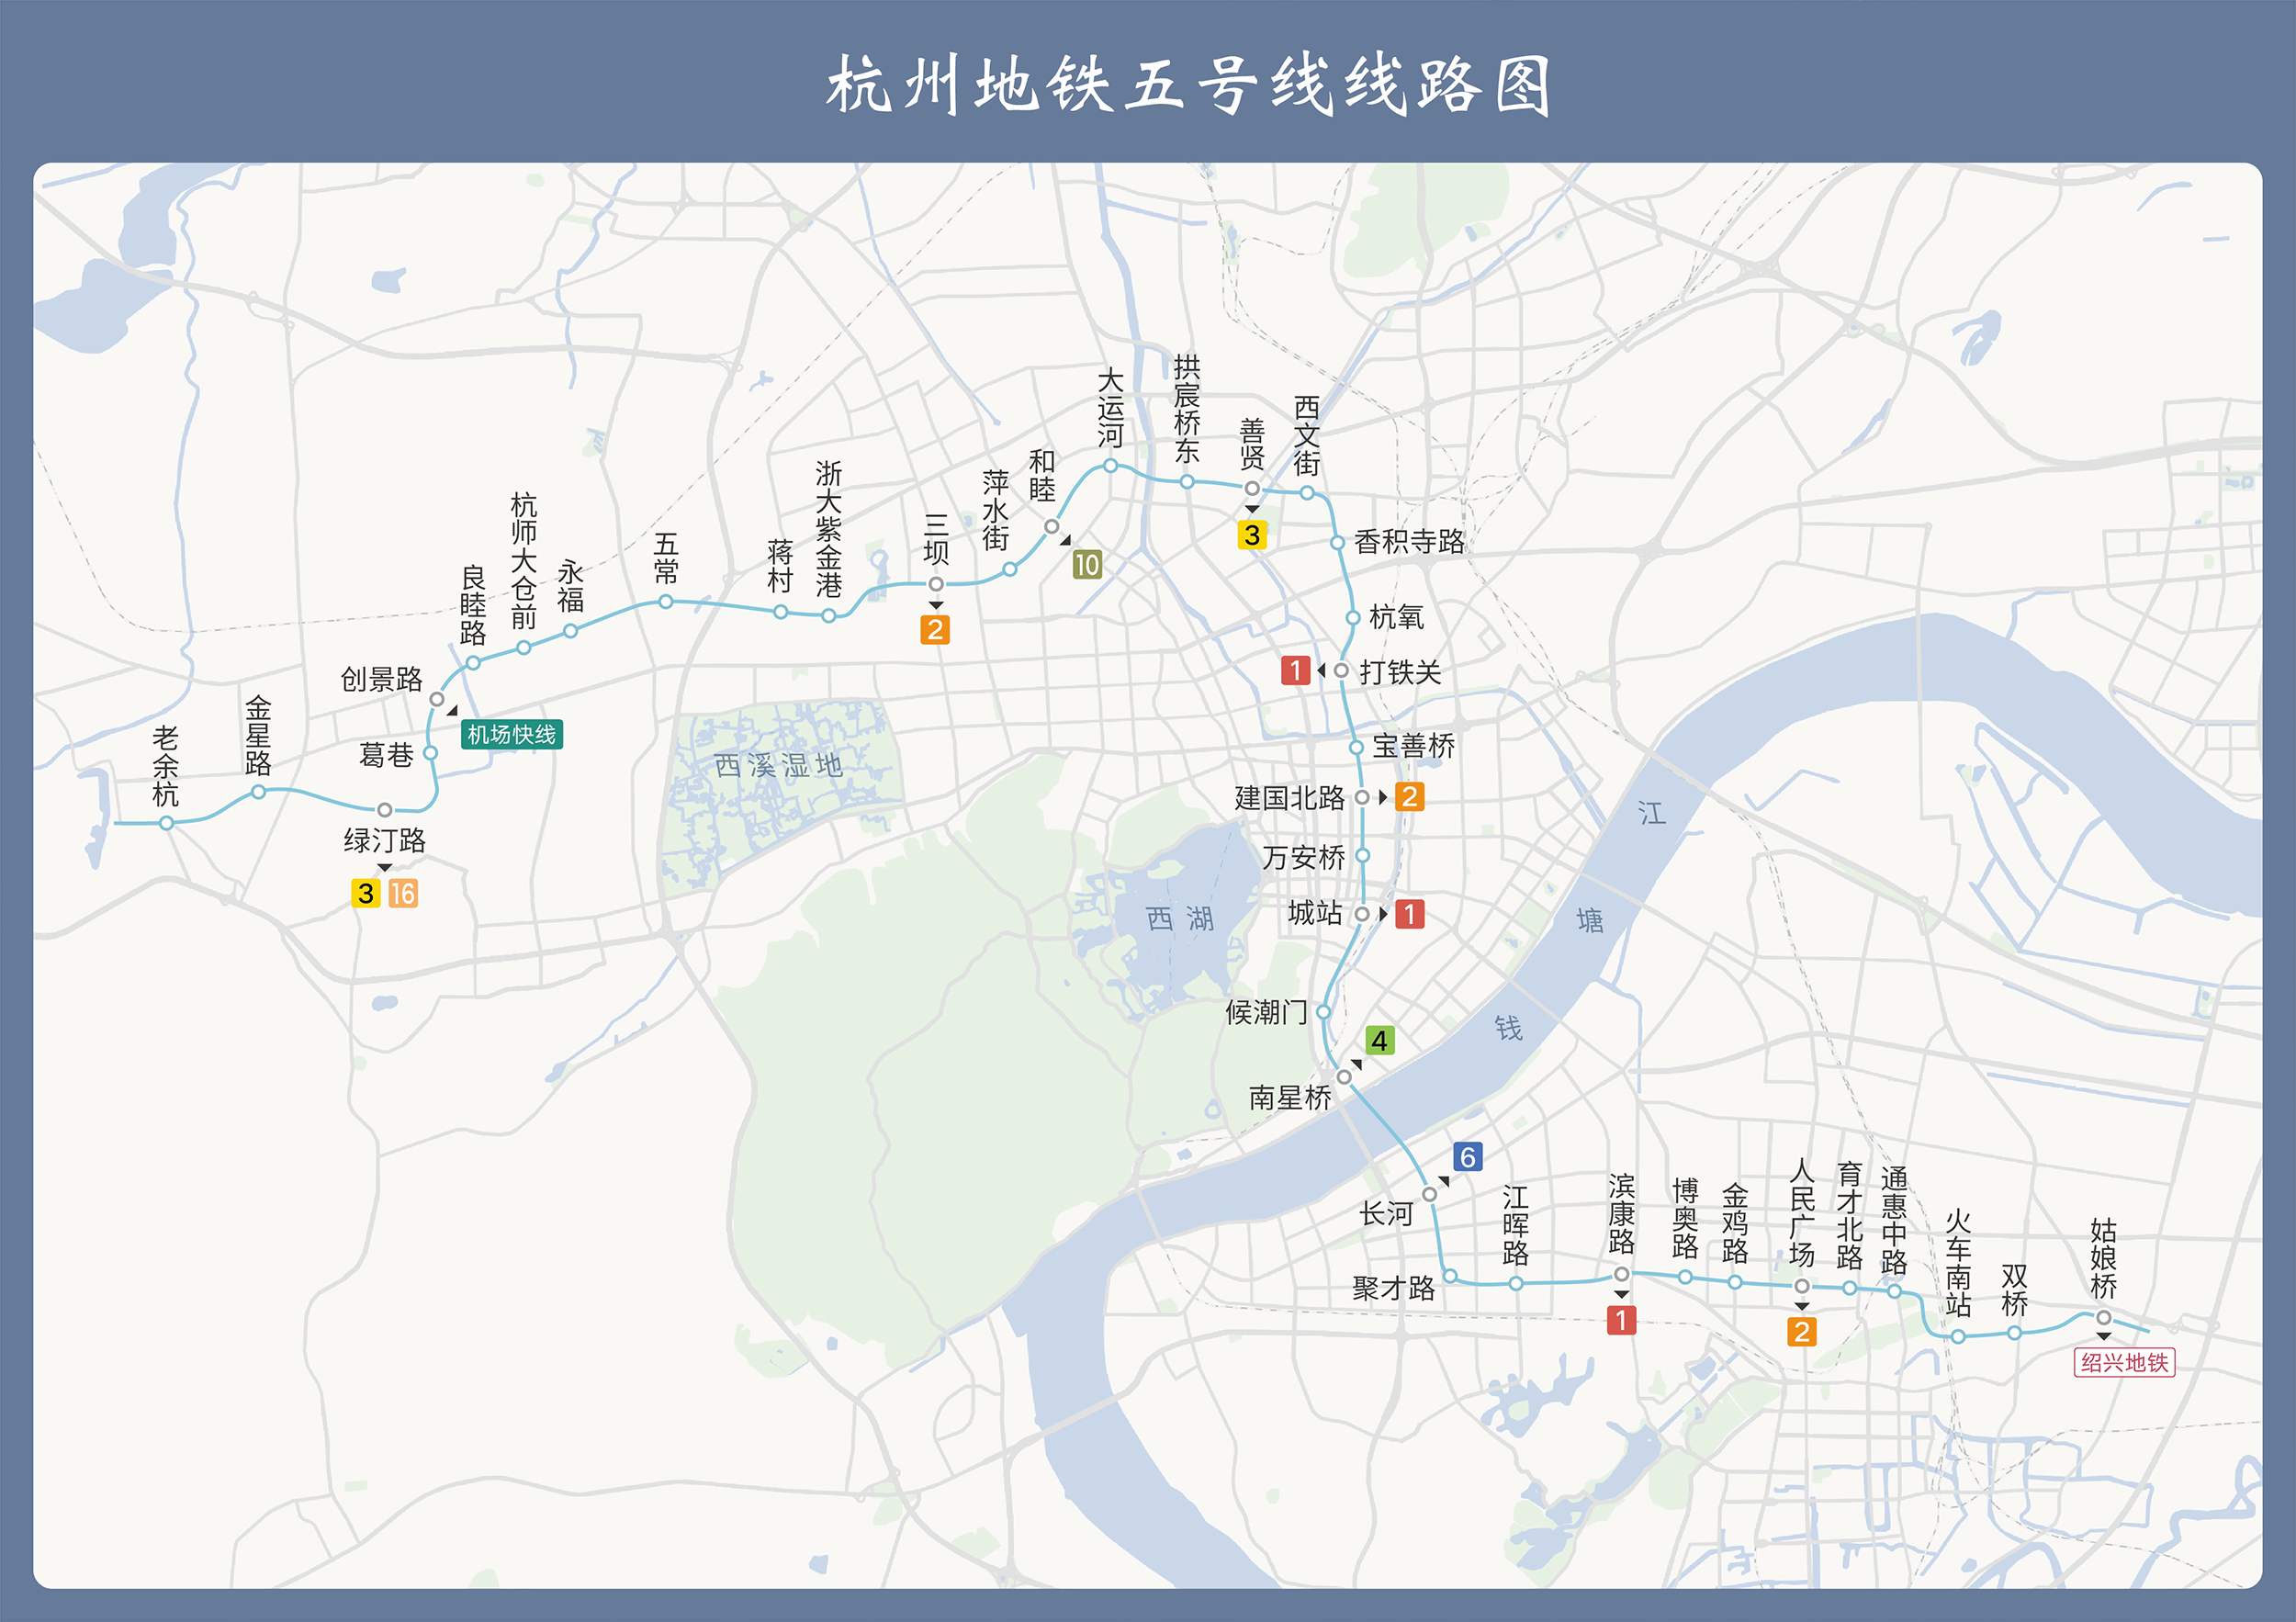 (点击查看高清大图)杭州地铁5号线首通段线路为:自东向西依次是善贤站